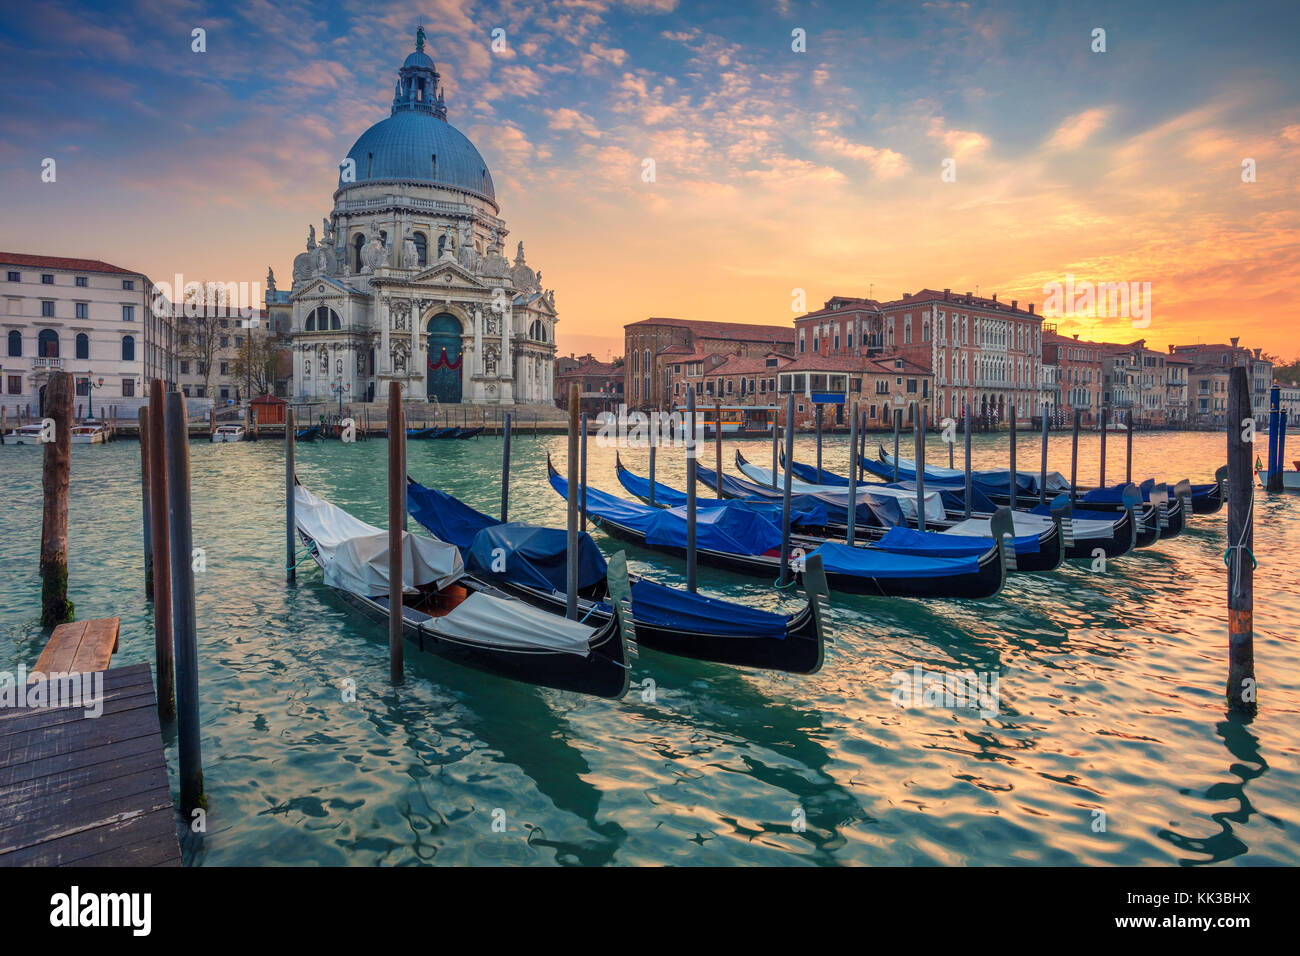 Venecia. paisaje imagen del gran canal de Venecia, con la basílica de Santa Maria della Salute, en el fondo. Foto de stock